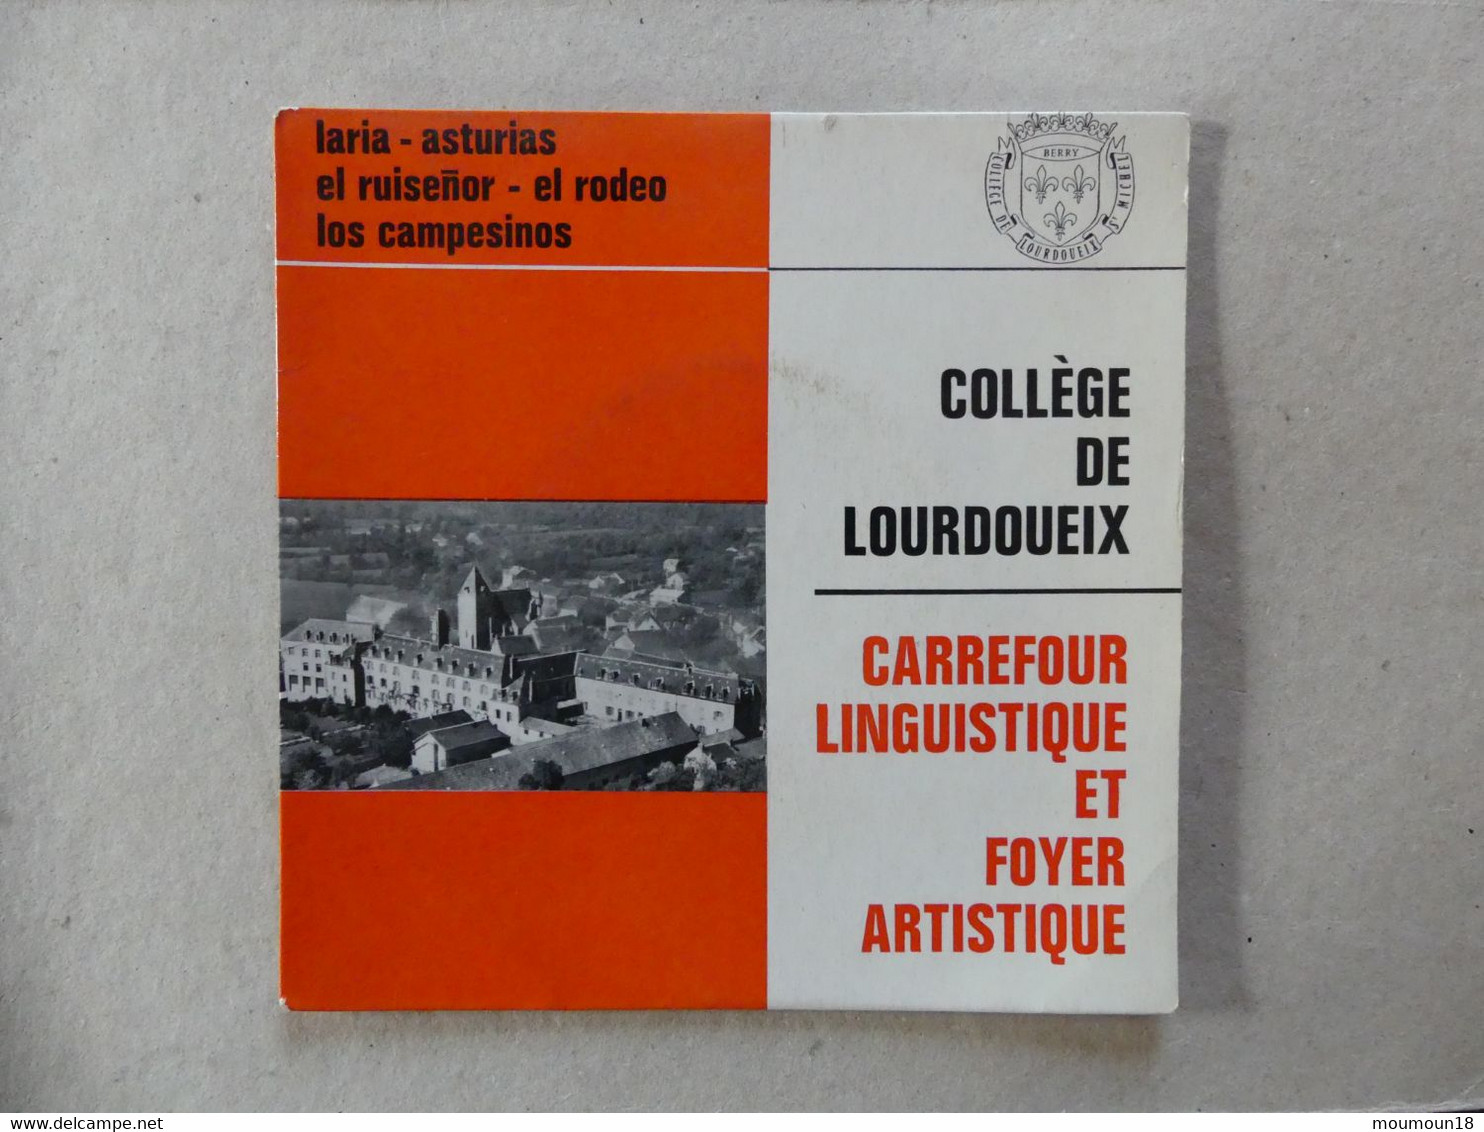 45 T College De Lourdoueix Carrefour Linguistique Et Foyer Artistique Matilla Ramos - Altri - Musica Spagnola